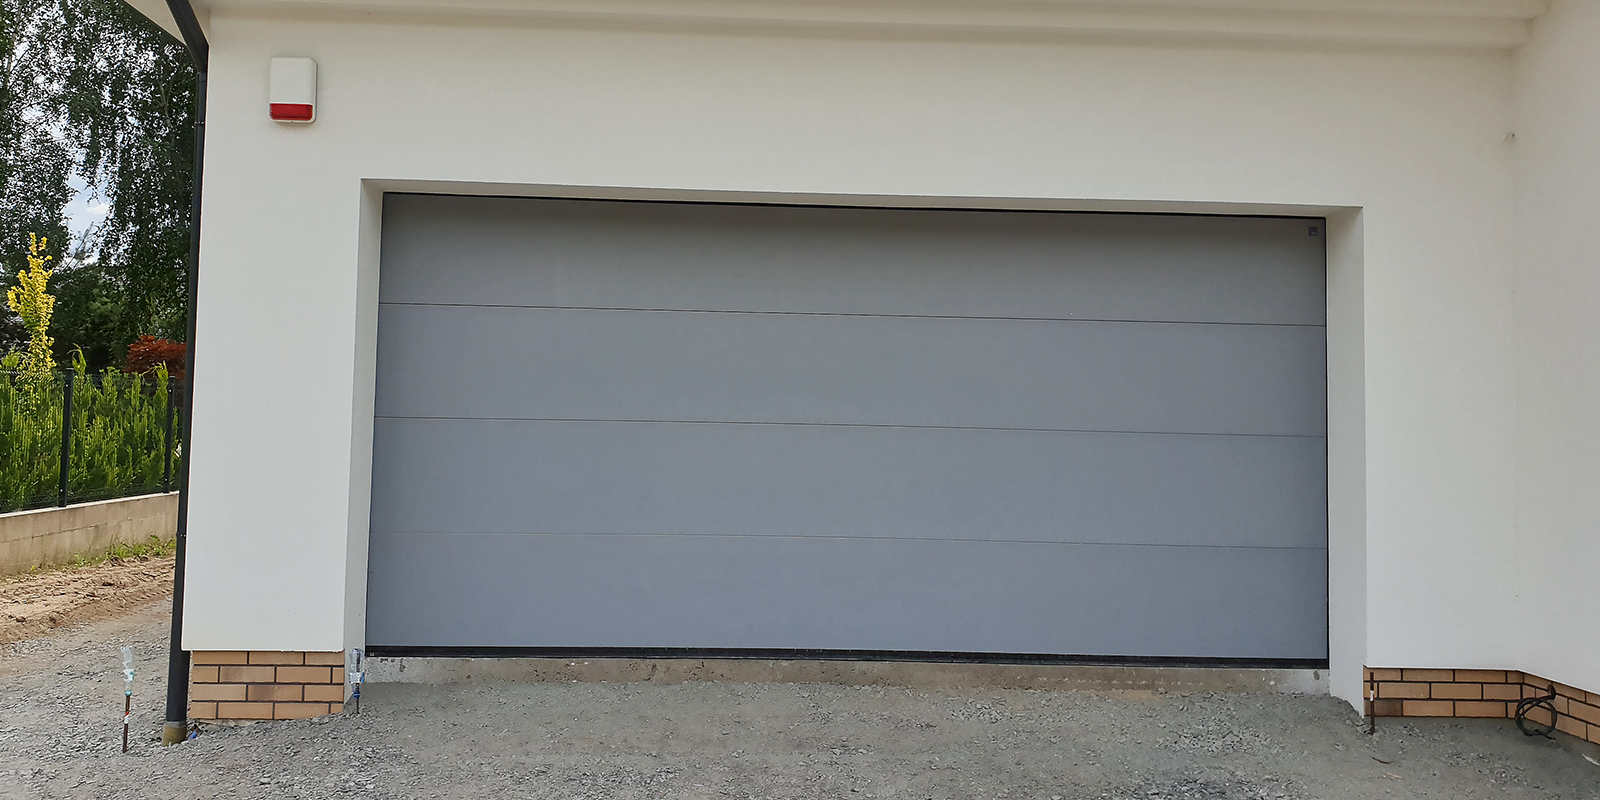 Brama garażowa to naturalne uzupełnienie stolarki okiennej i drzwiowej.